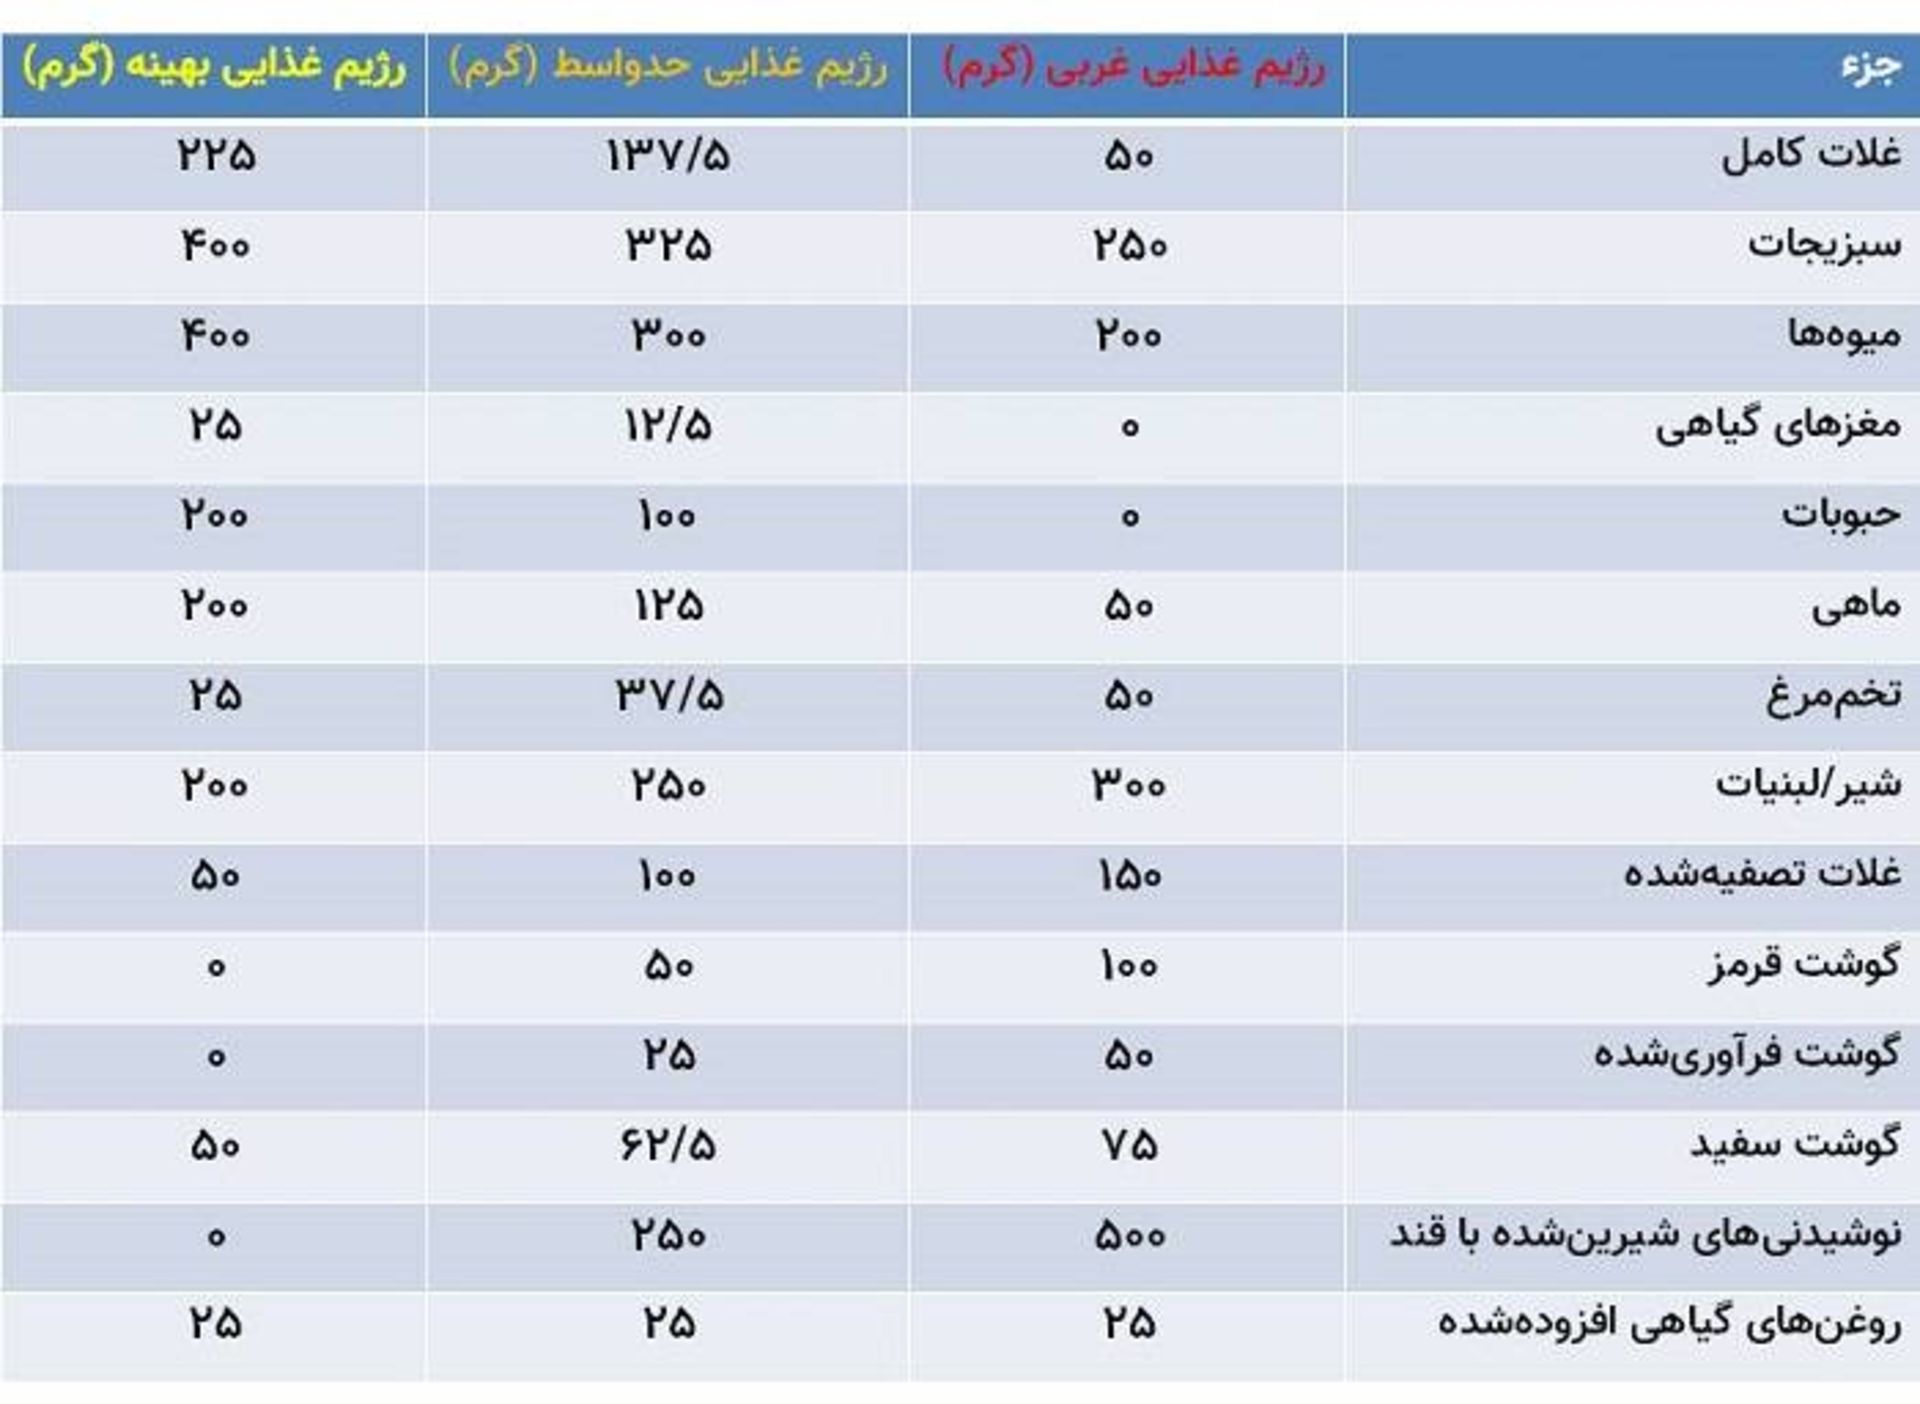 جدول ترکیبات غذایی رژیم غذایی مختلف / table